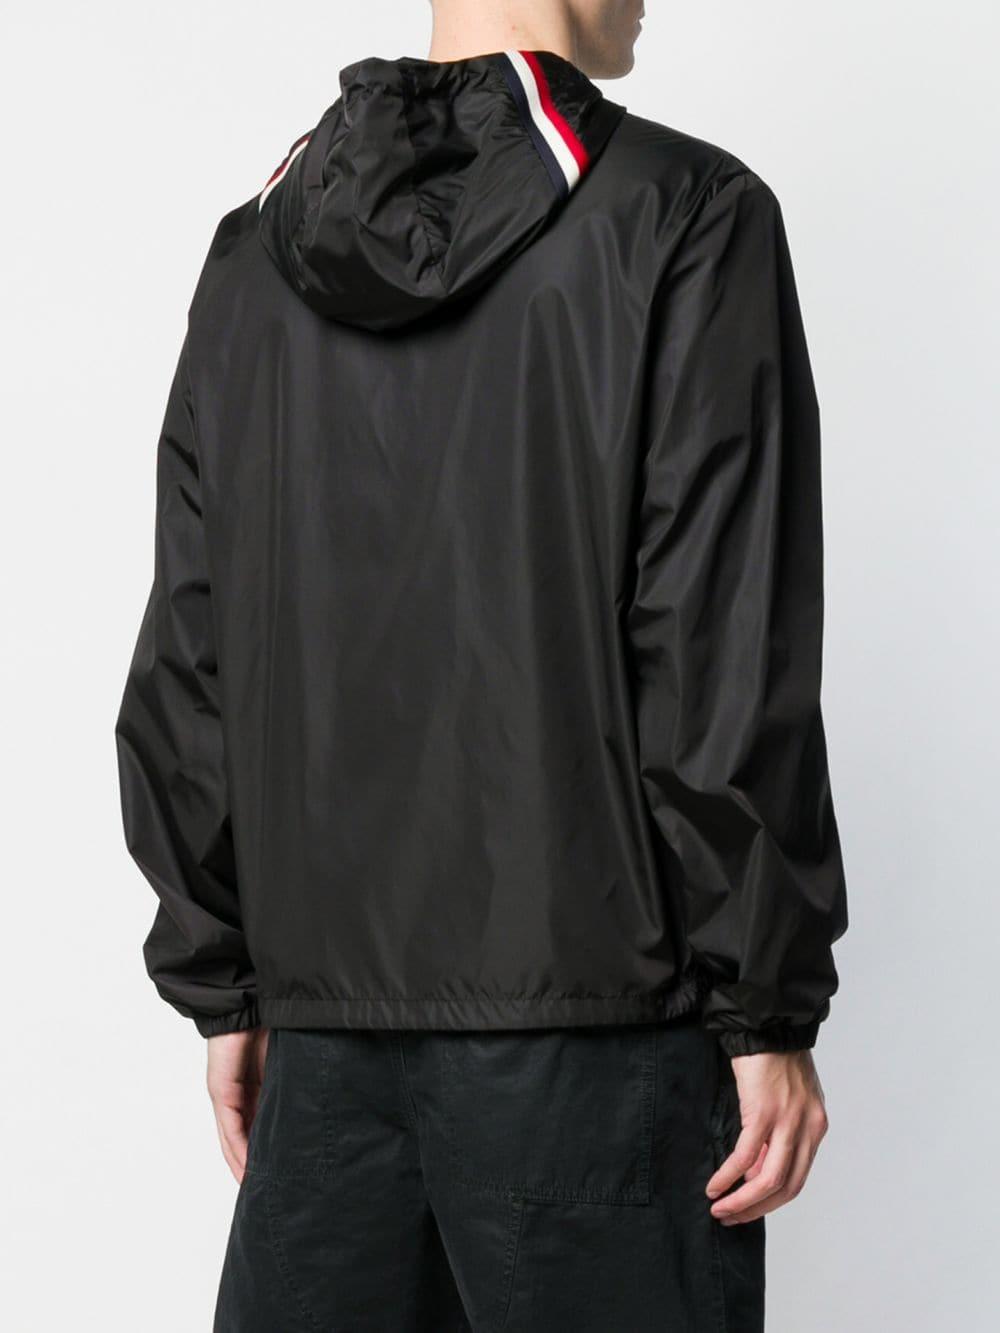 Moncler Grimpeurs Jacket in Black for Men - Lyst